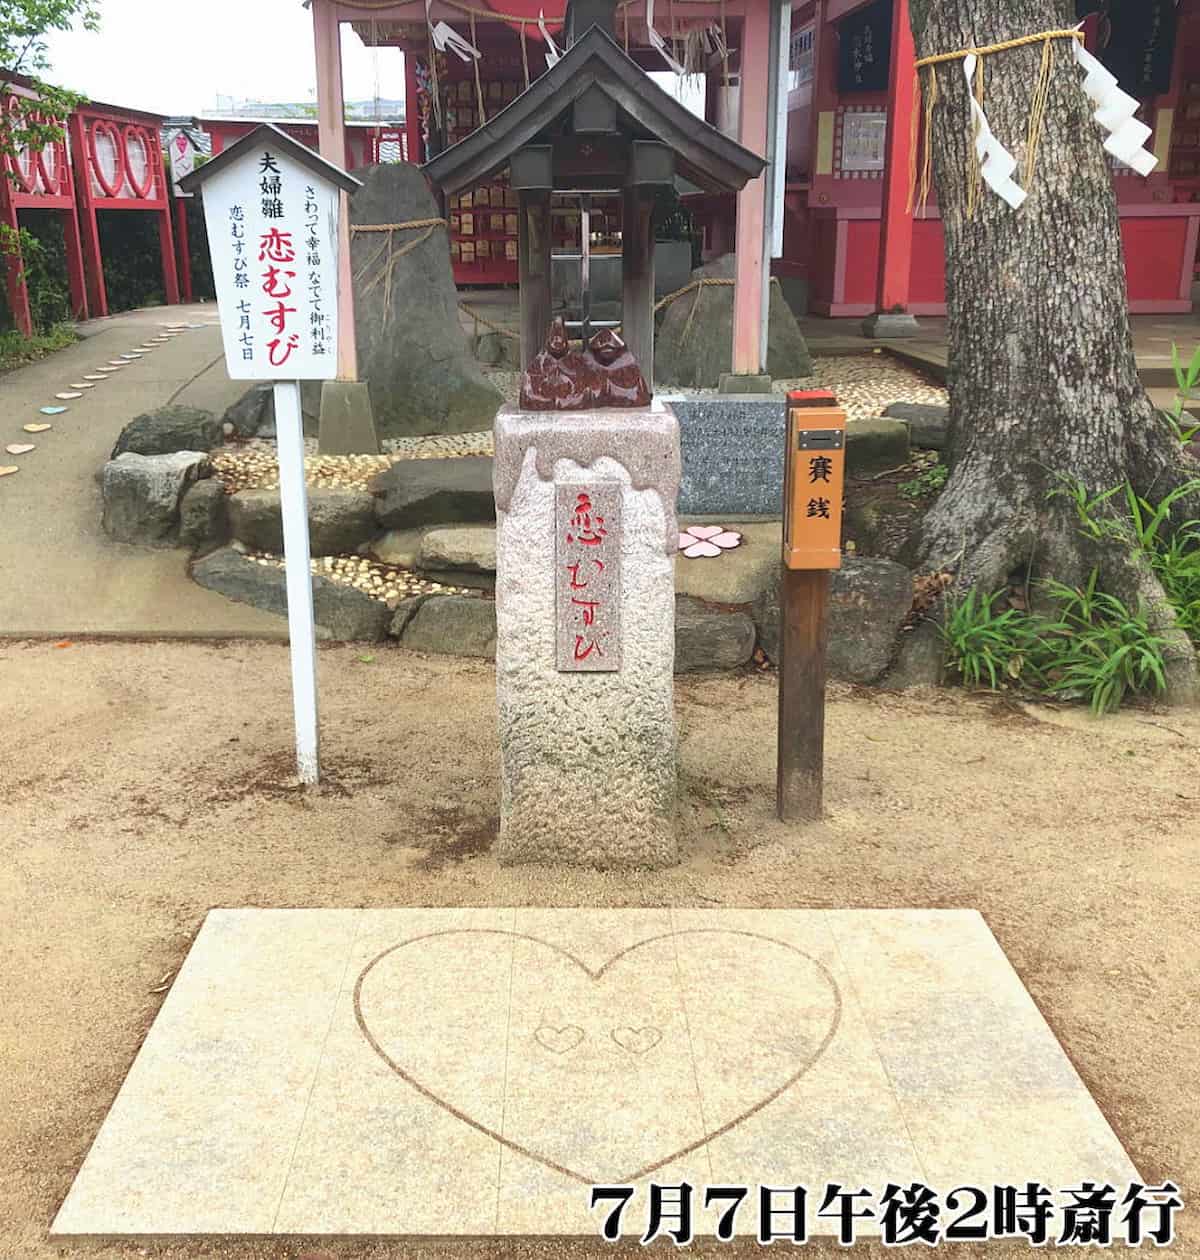 七夕恒例！恋木神社の「恋むすび祭」が開催されるみたい。7月7日（筑後市）